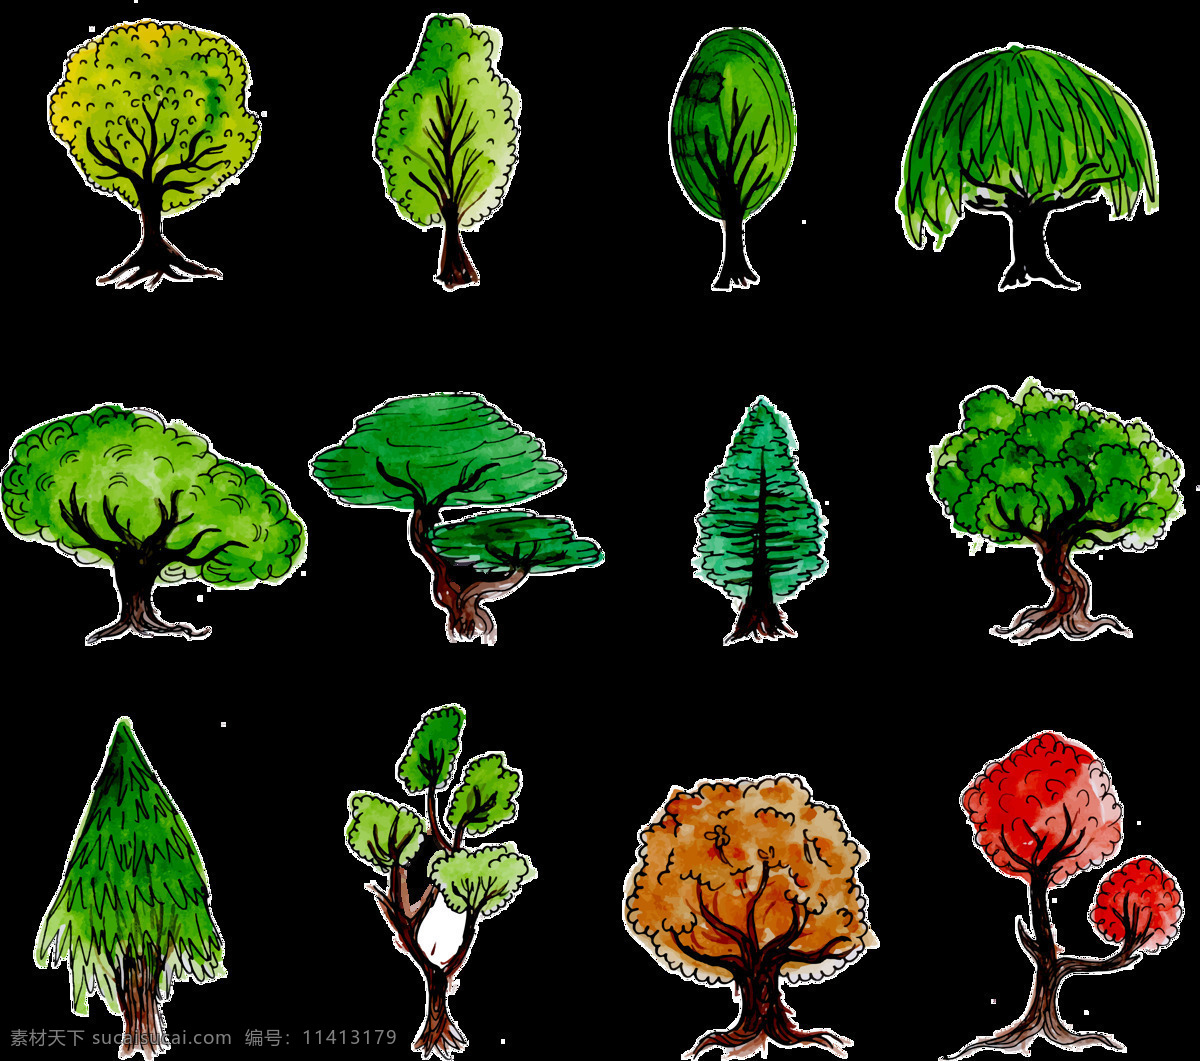 手绘 水彩 大树 免 抠 透明 图 层 卡通抽象大树 彩色 抽象 创意 水彩风格大树 水彩素材 创意素材 大树素材